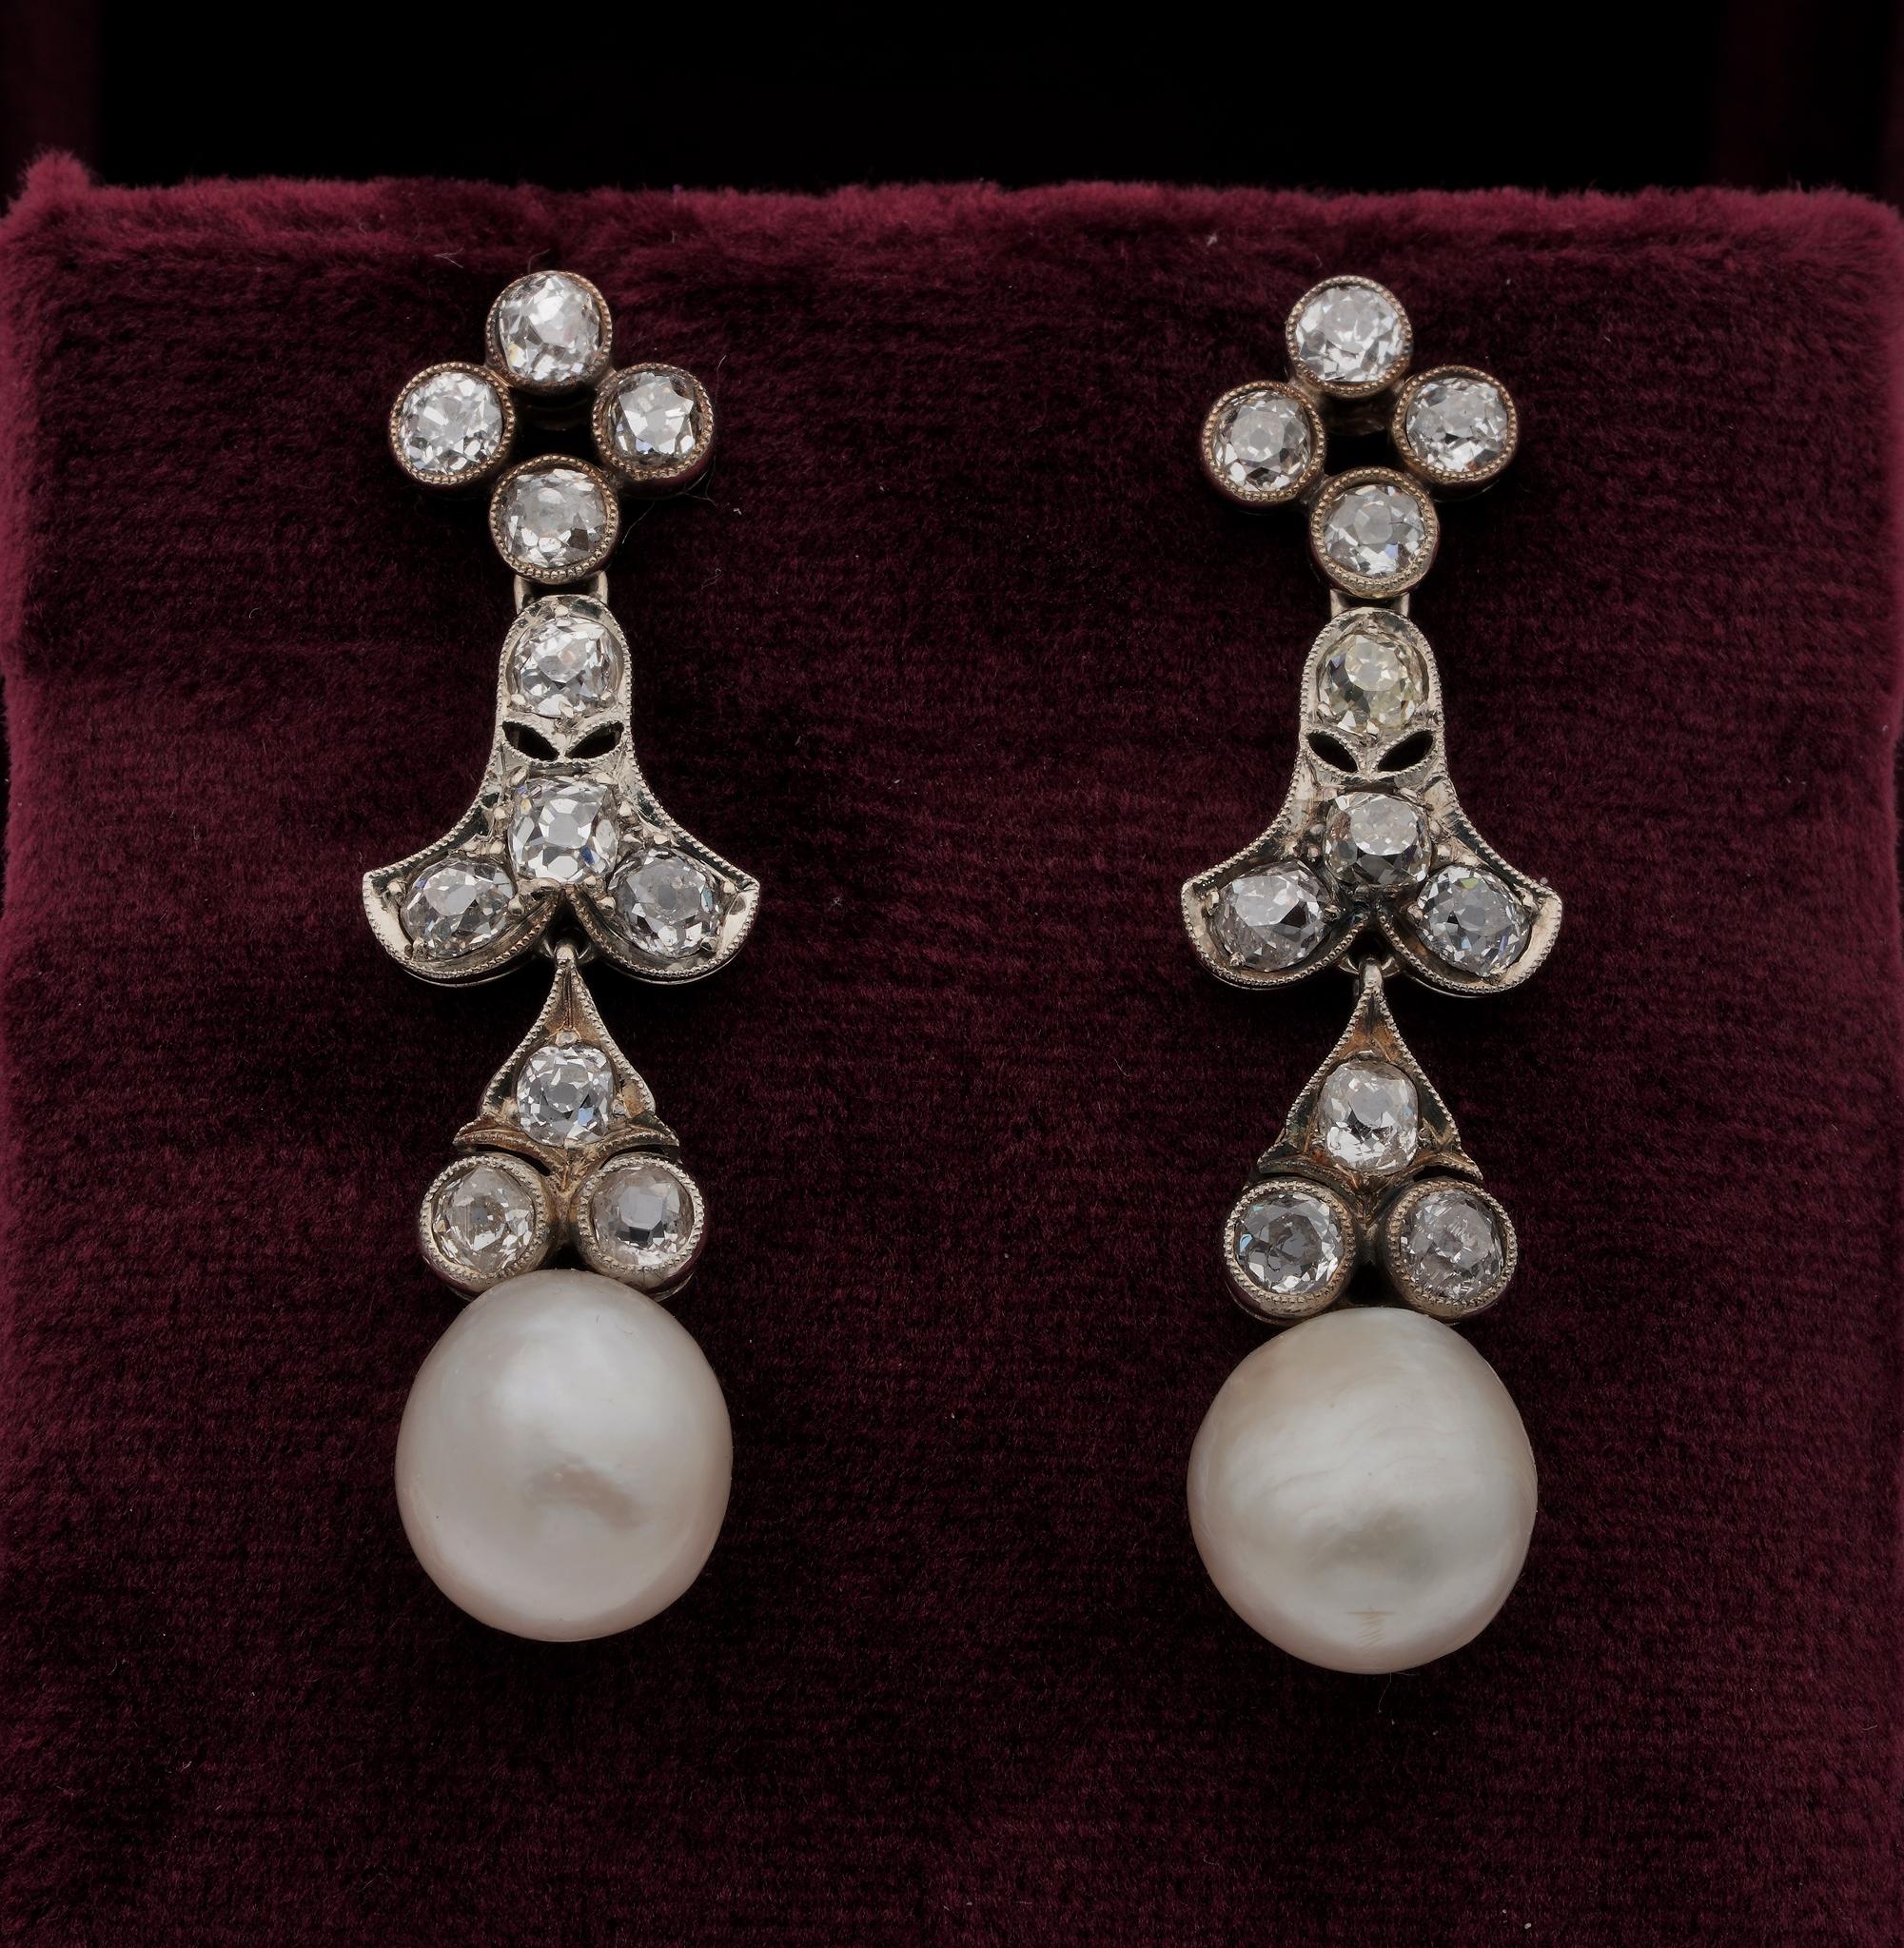 Les perles naturelles font partie des pierres précieuses les plus rares, recherchées pour leur rareté et leur beauté
Boucles d'oreilles intemporelles en diamants et perles de l'époque victorienne, incarnation de l'élégance éternelle, réalisées à la